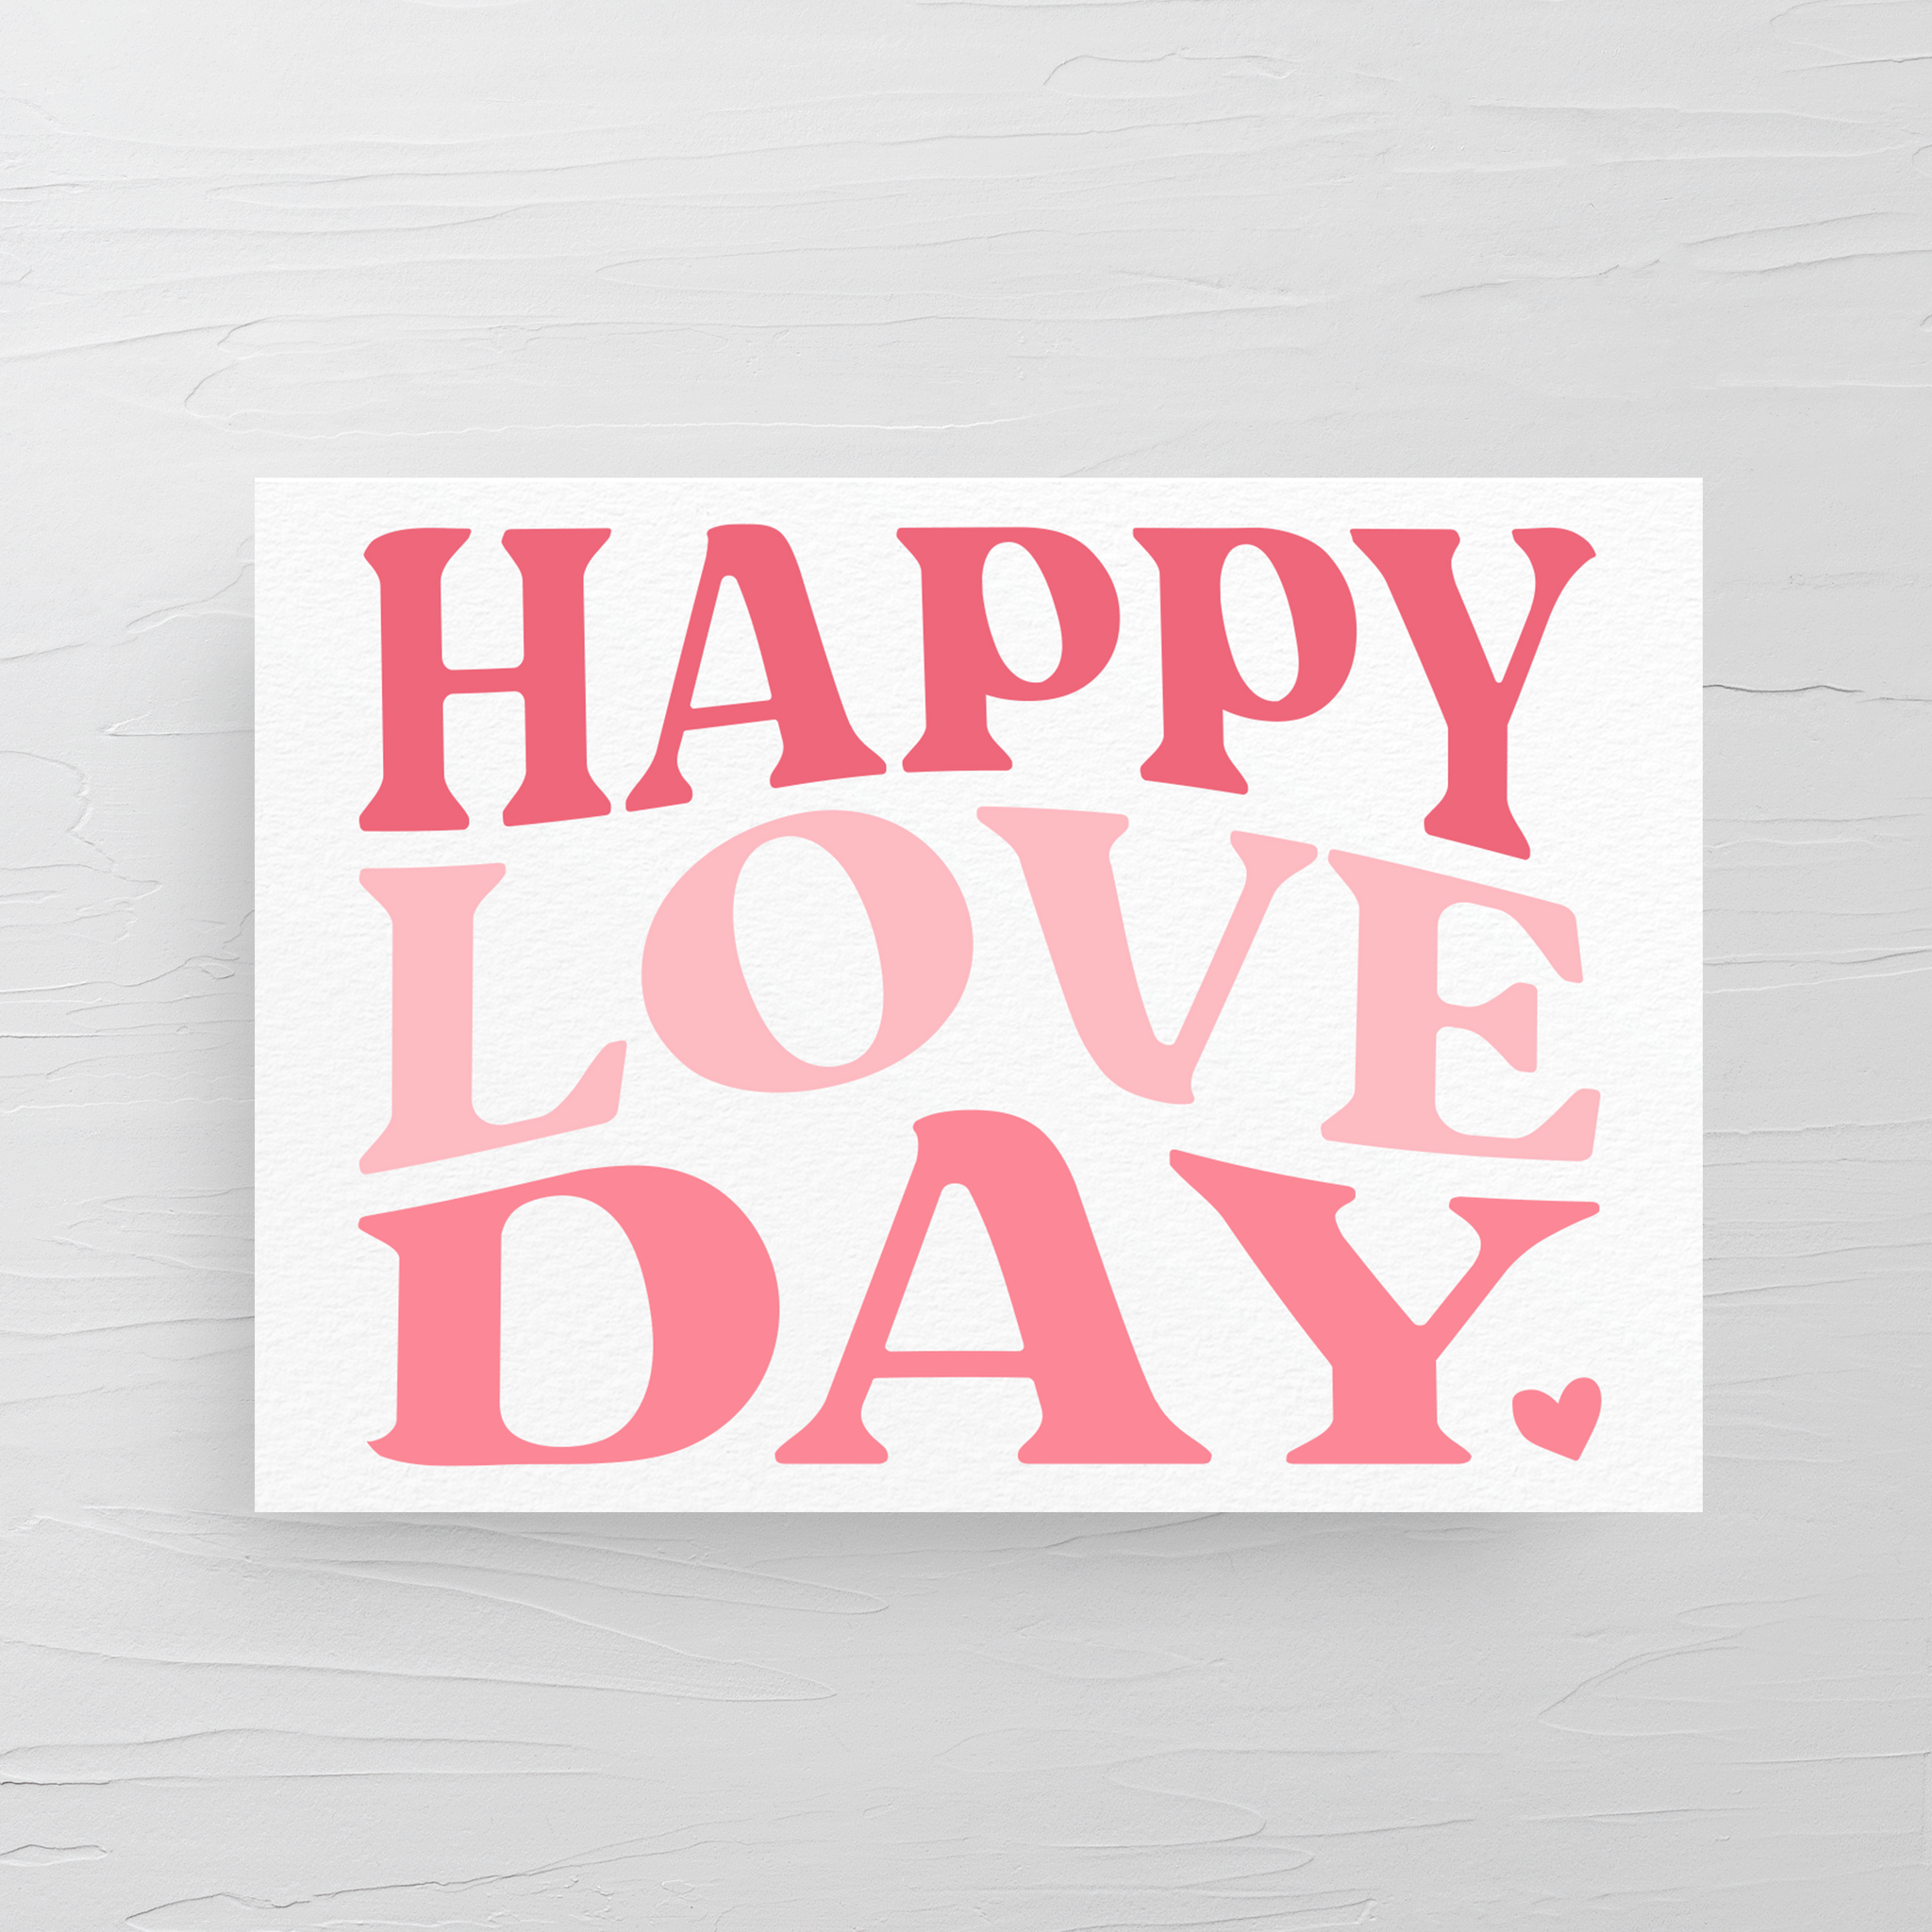 LOVE DAY CARD